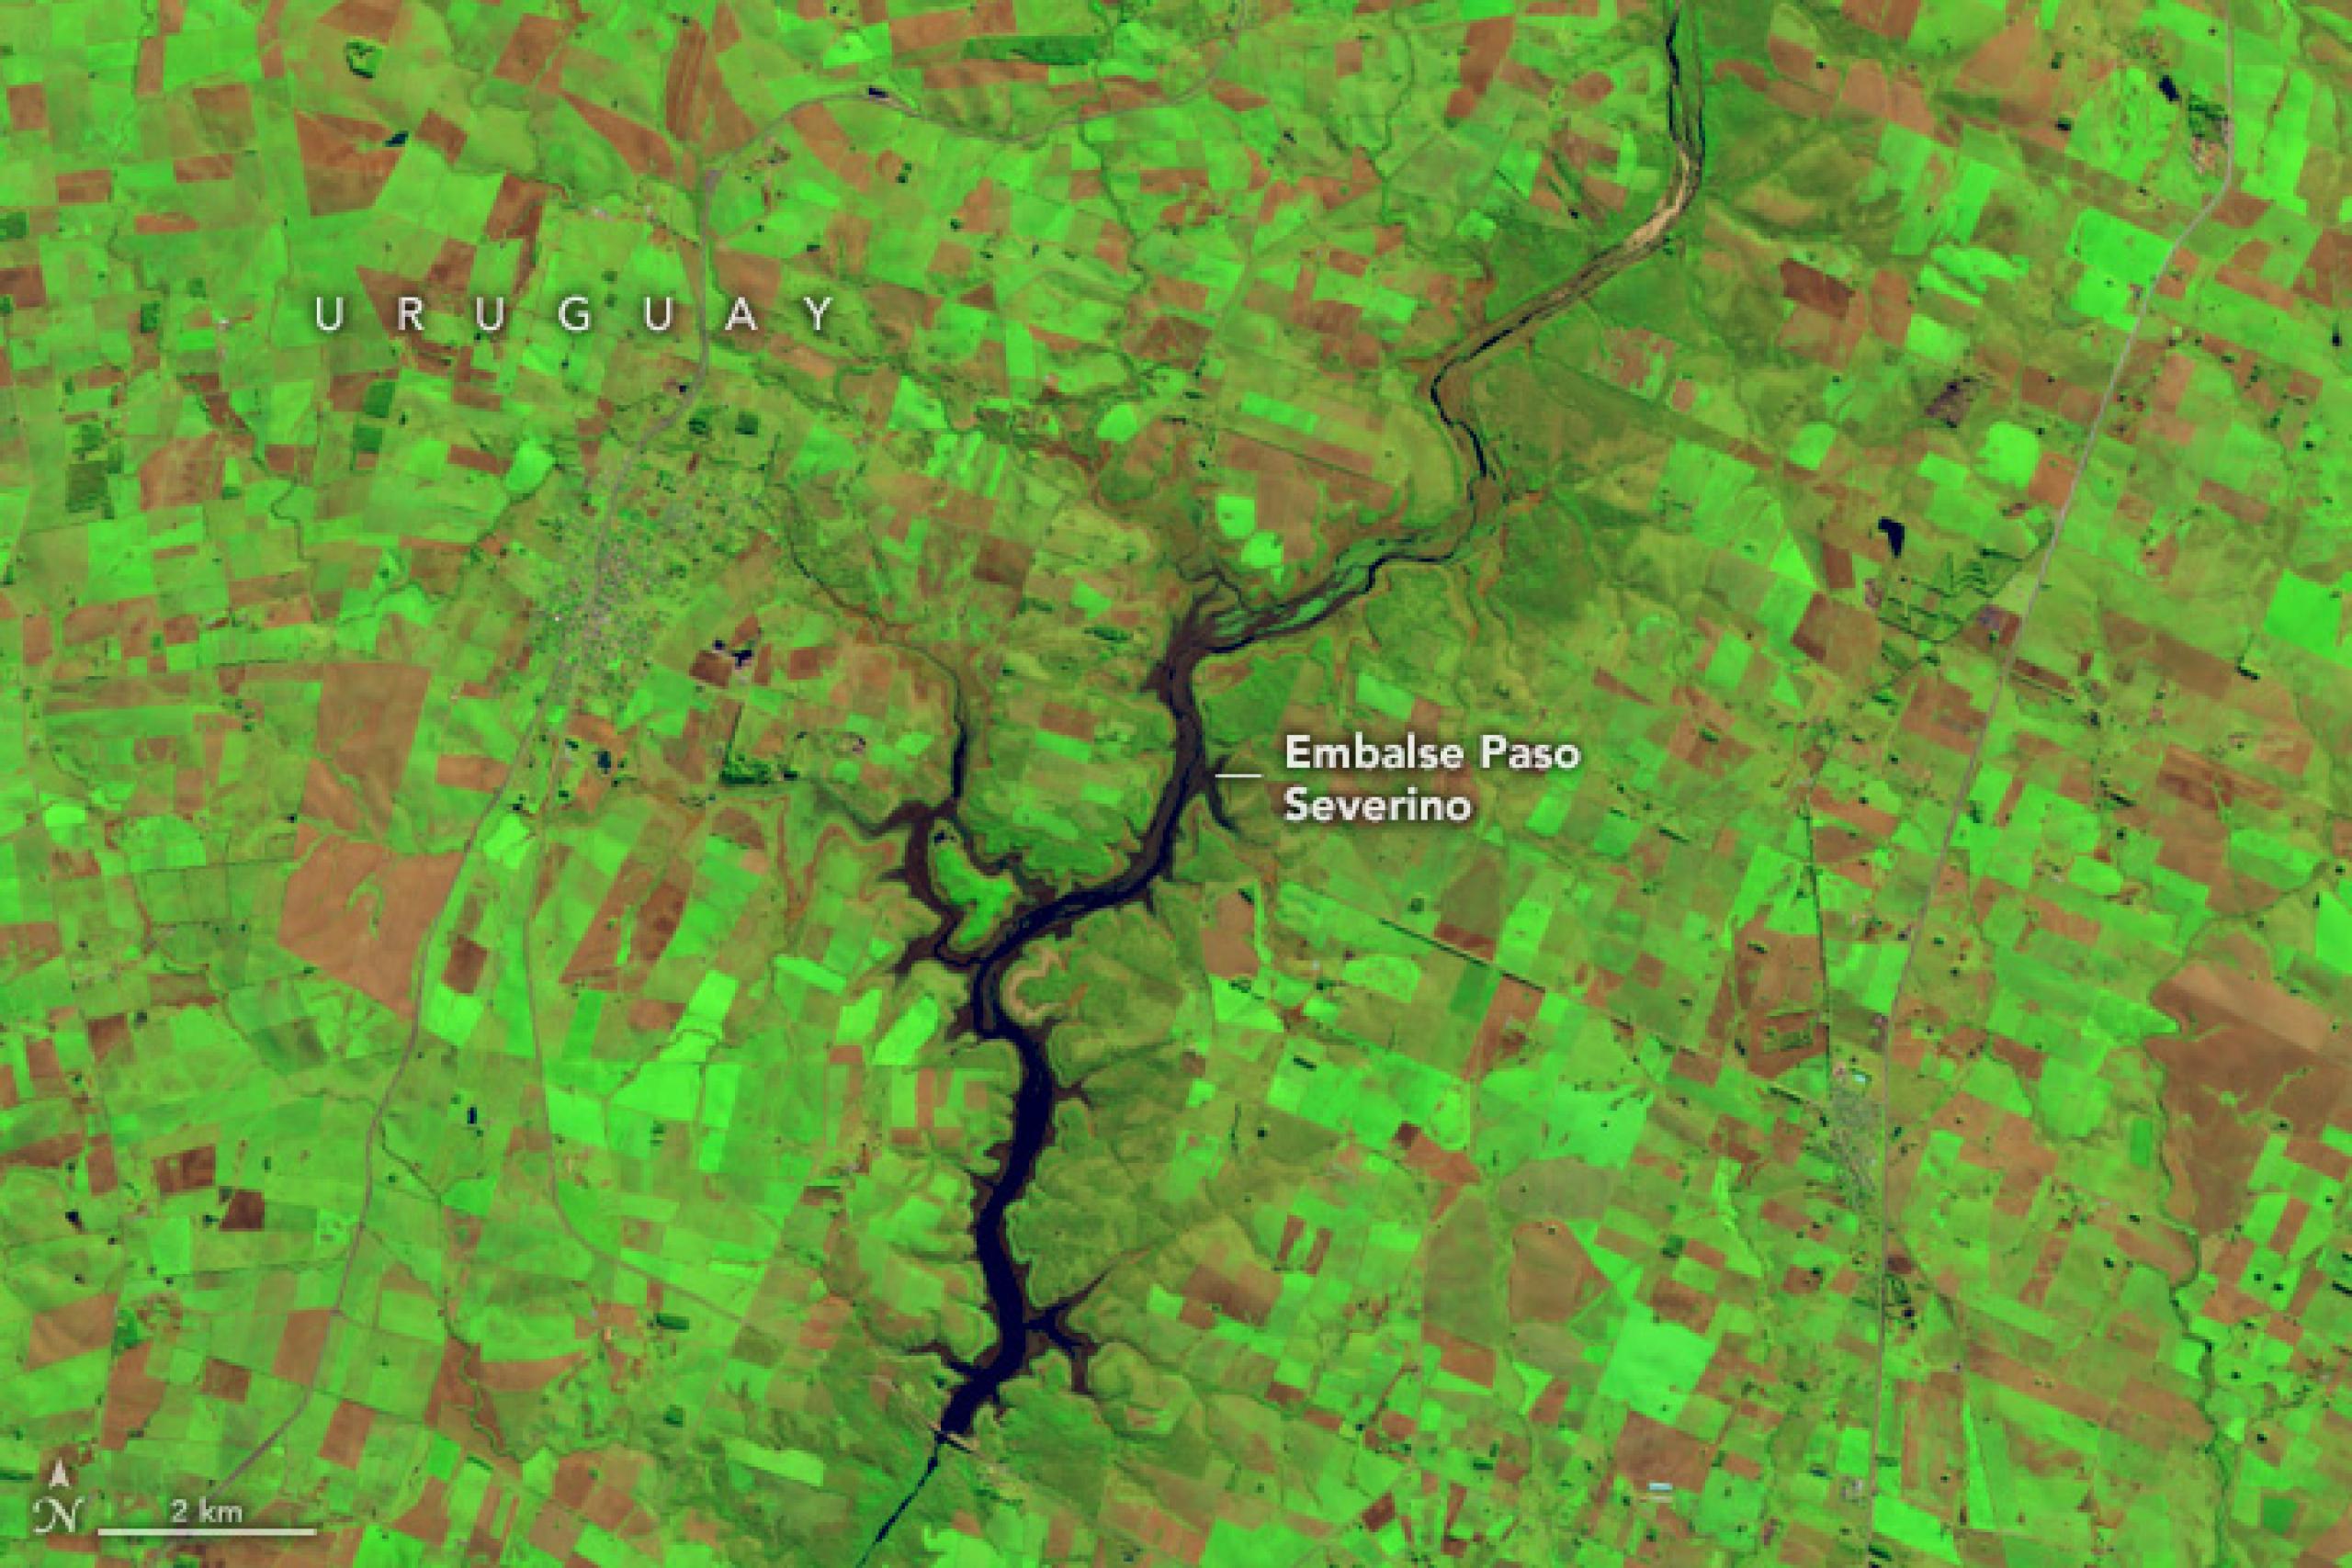 Imagen de satélite en color añadido del embalse Paso Severino en Uruguay durante la sequía de junio de 2023. El embalse, antes grande y próspero, se ha reducido a una franja mucho más delgada de agua azul oscuro. El paisaje circundante se ve verde brillante y marrón rojizo.